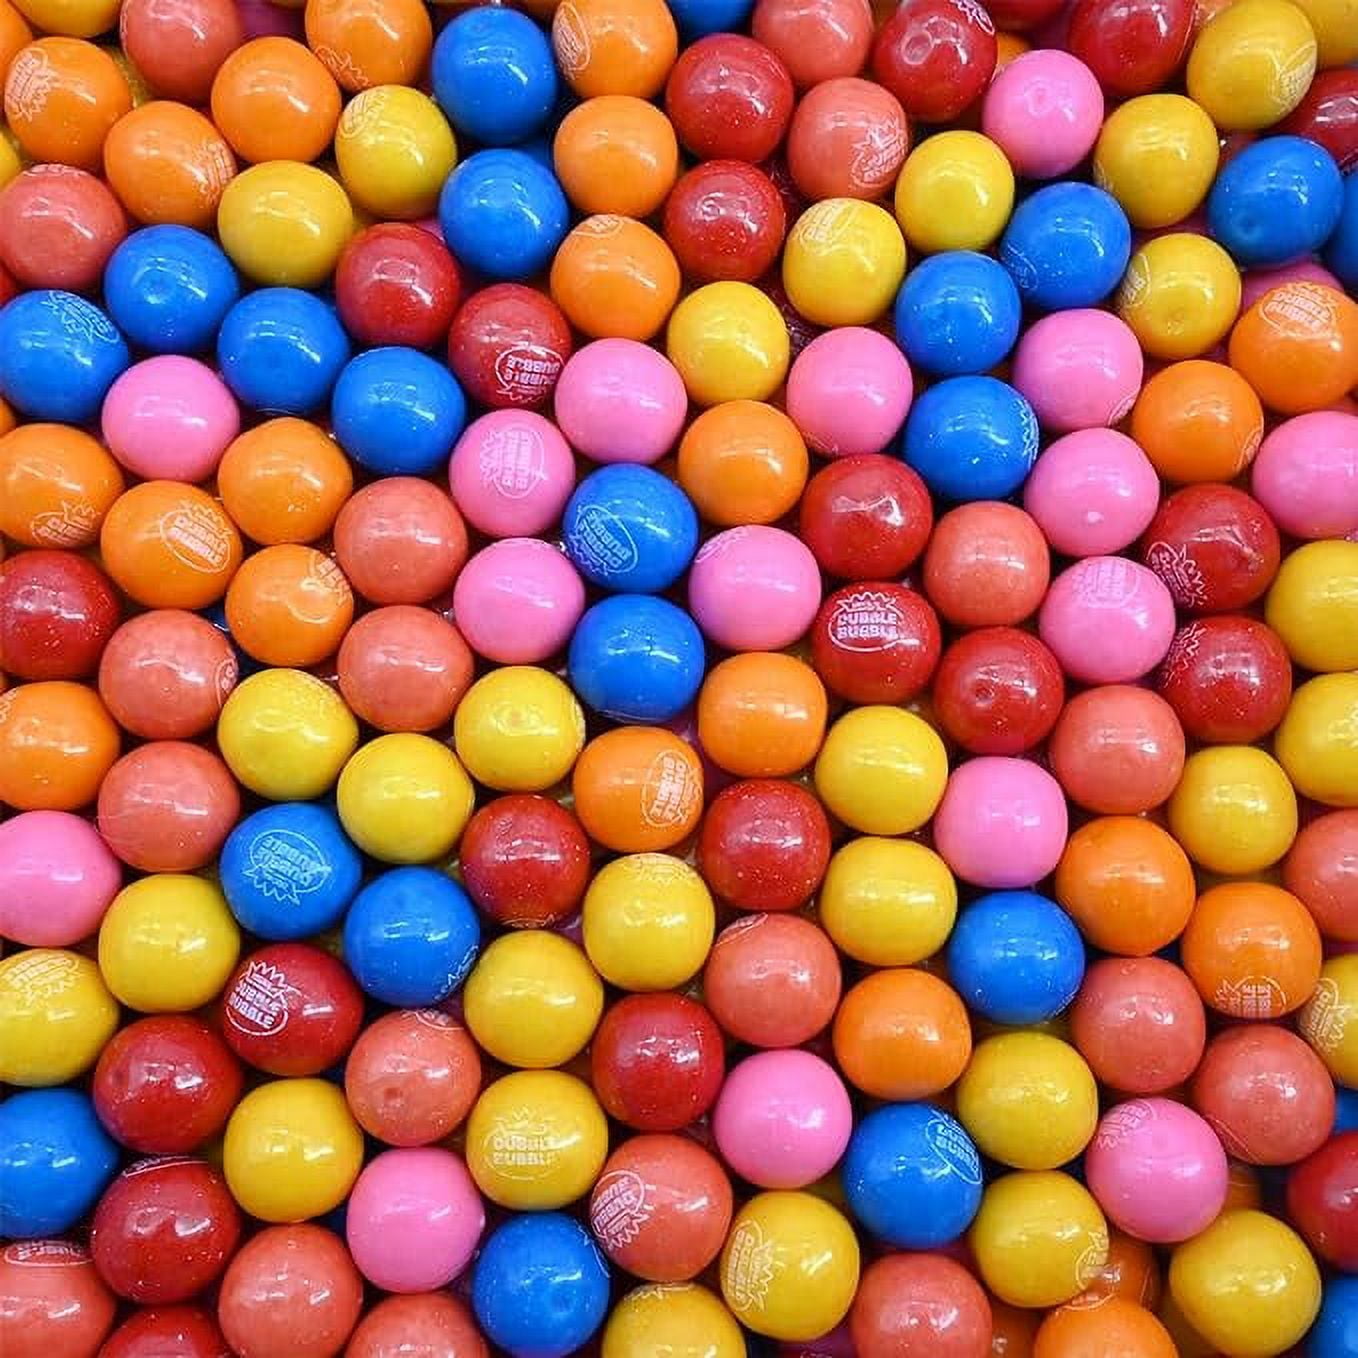 Distributeur Bonbons Chewing-gum Cacahuètes - X3 Compartiments - 29 X 13 cm